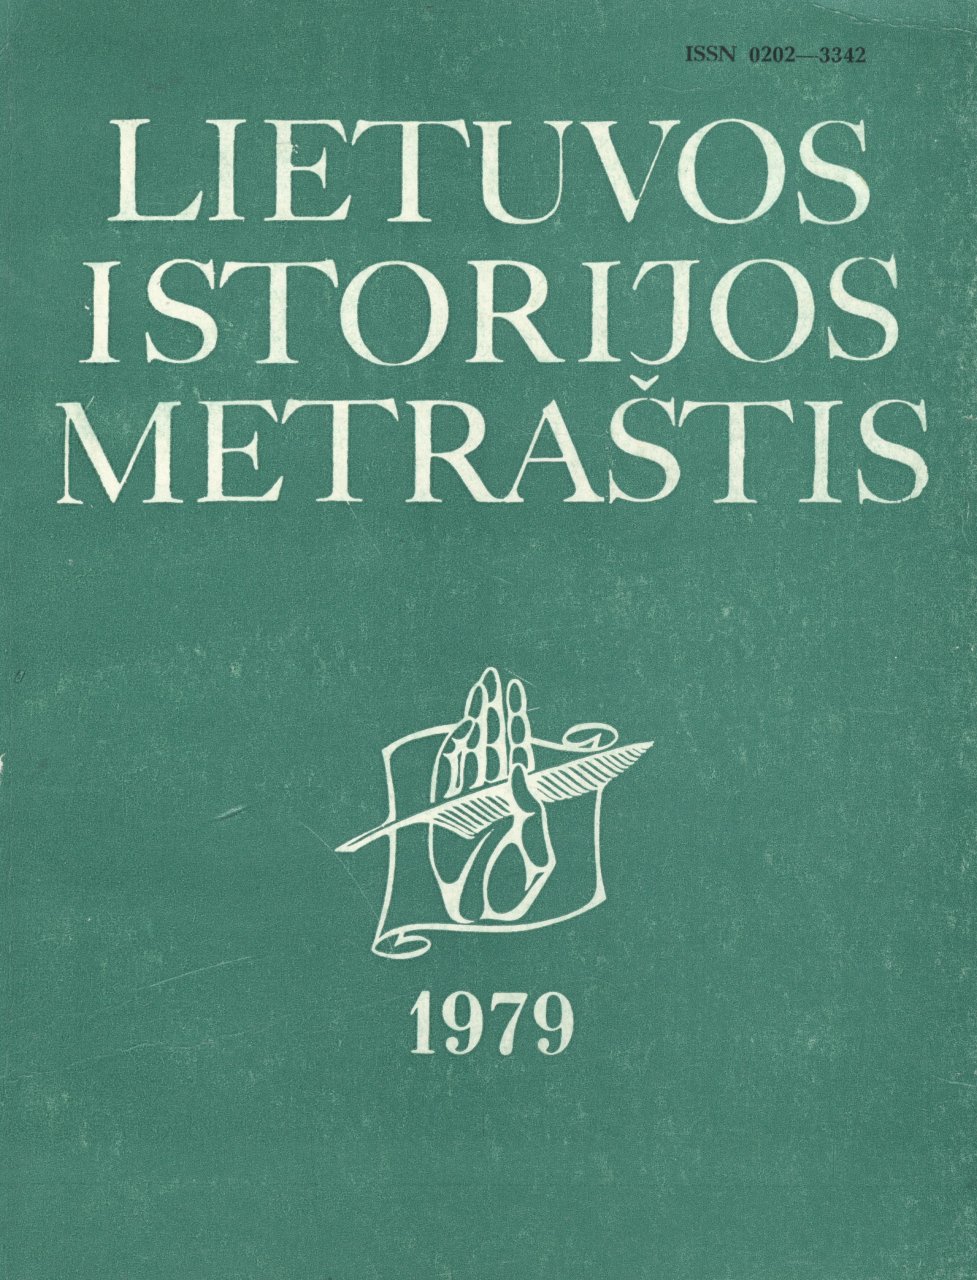 Lietuvos istorijos metraštis 1979 metai